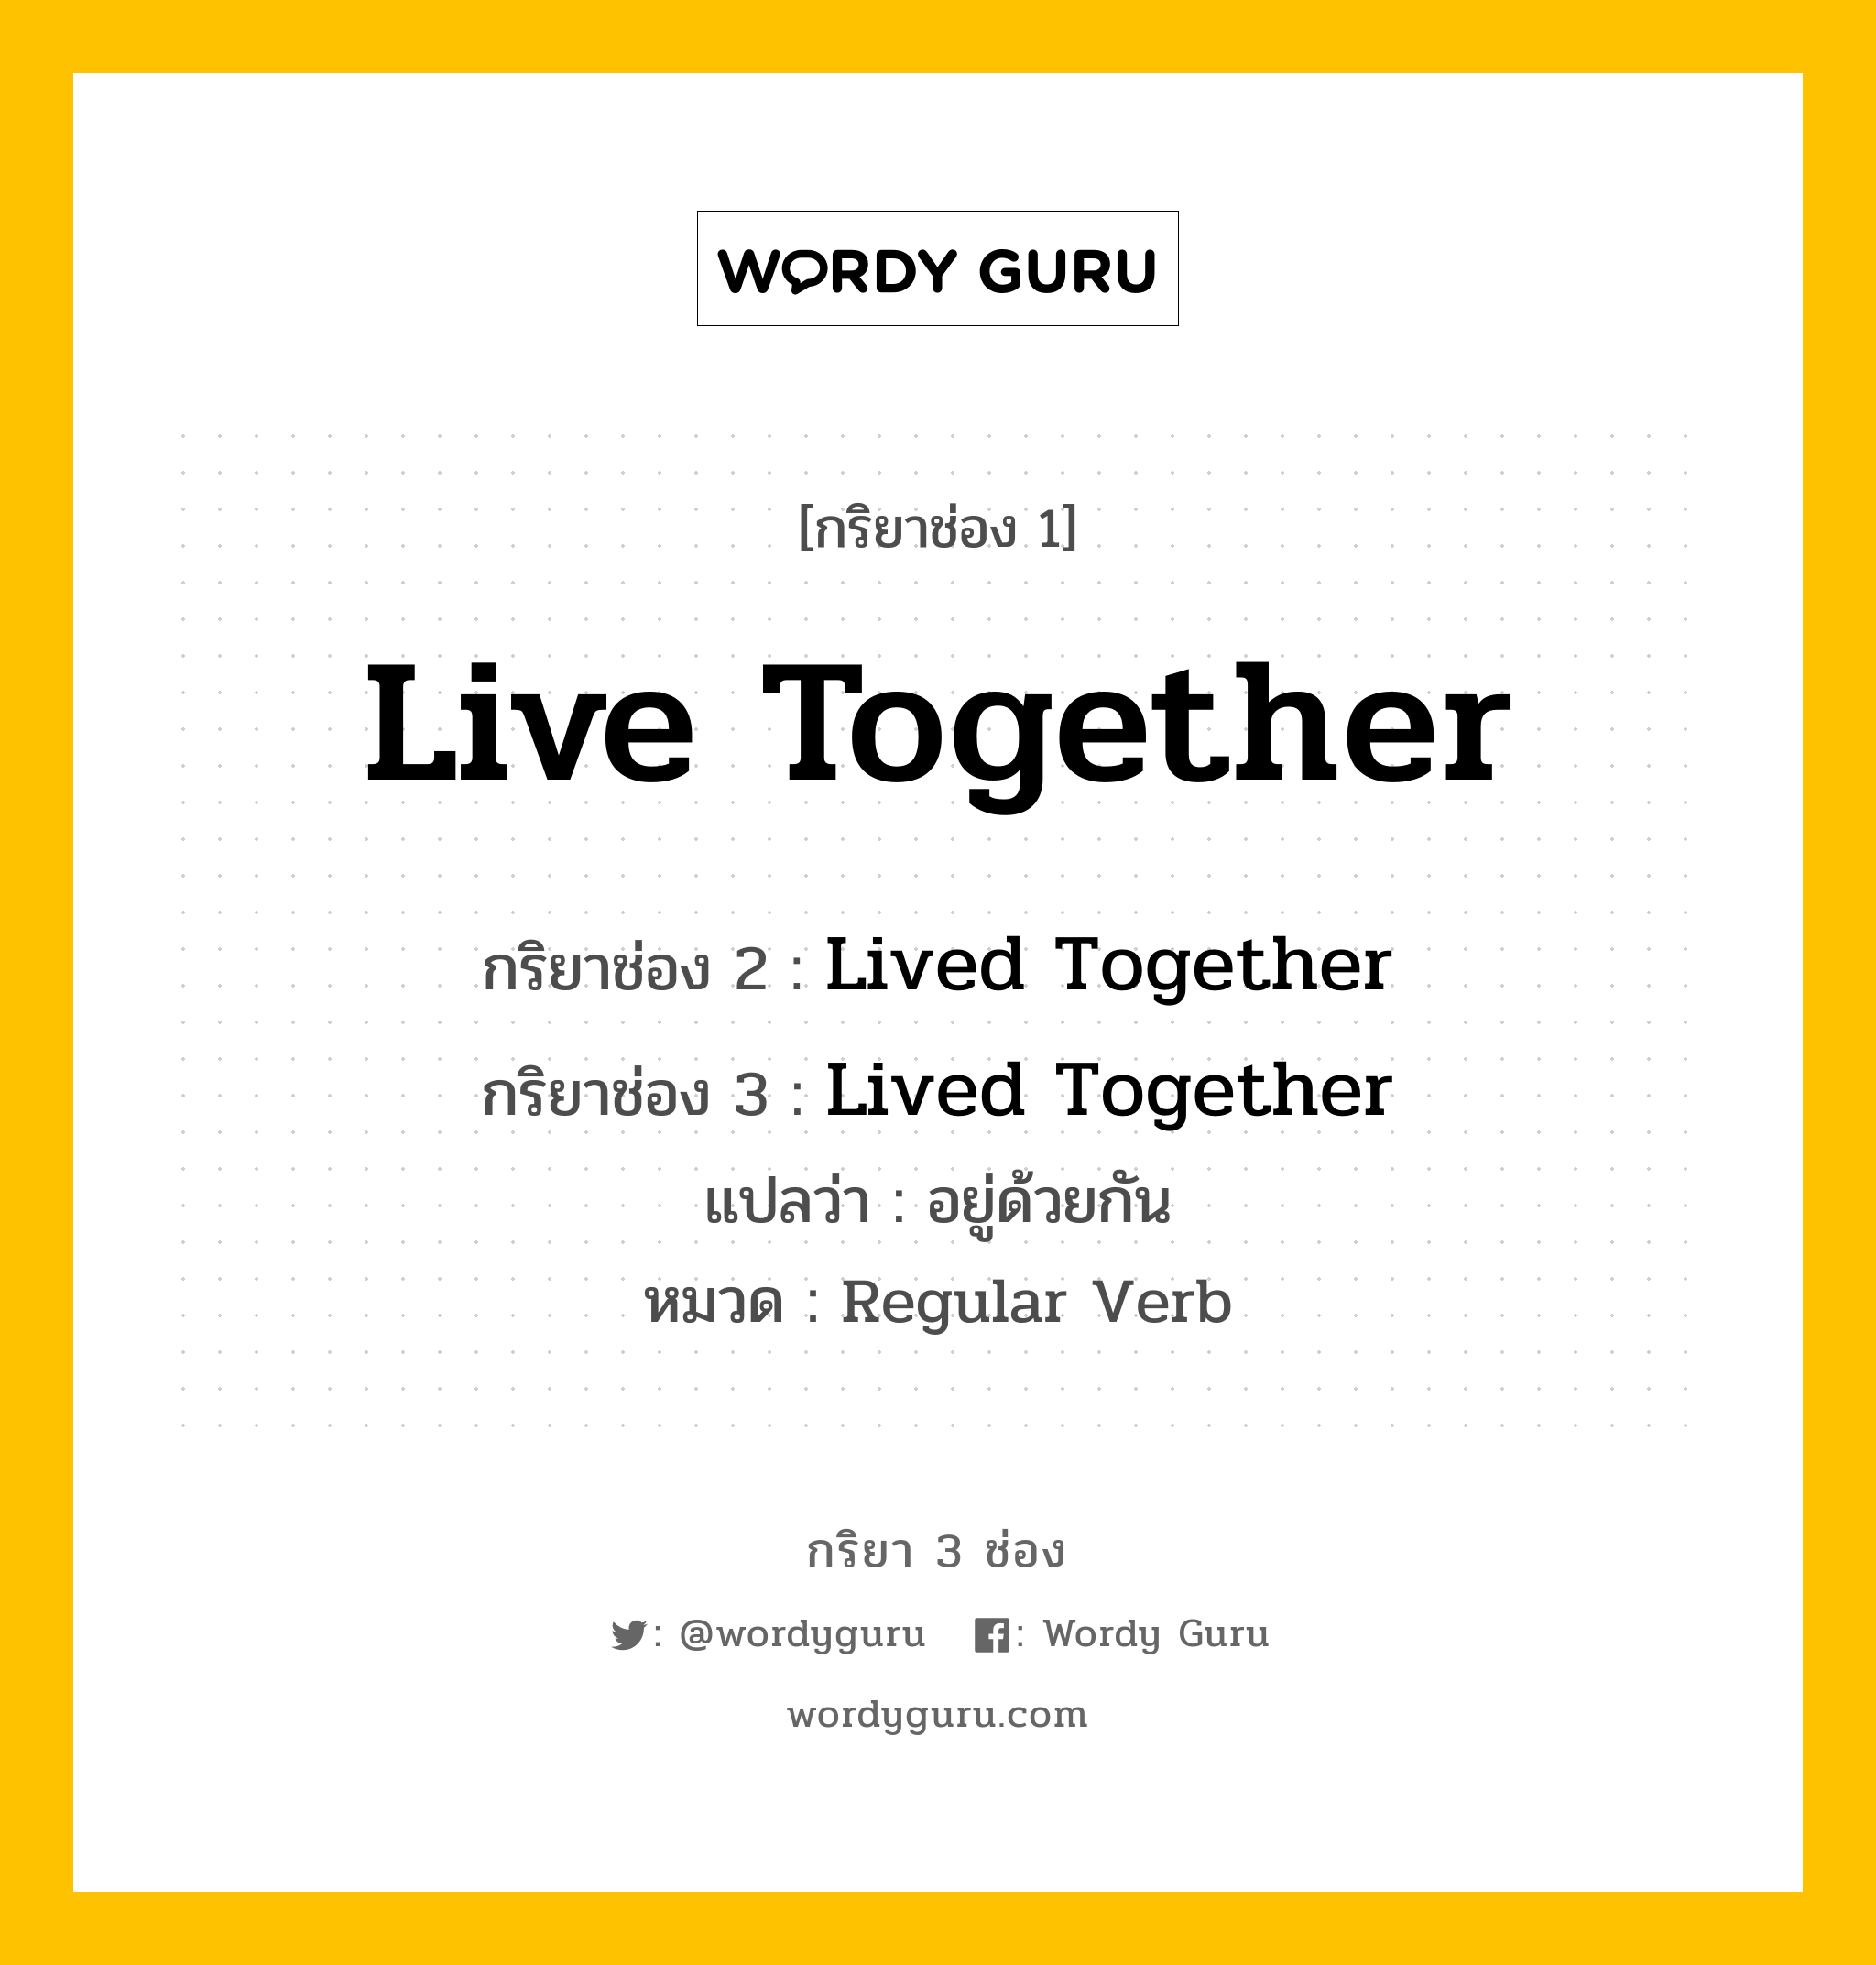 กริยา 3 ช่อง ของ Live Together คืออะไร?, กริยาช่อง 1 Live Together กริยาช่อง 2 Lived Together กริยาช่อง 3 Lived Together แปลว่า อยู่ด้วยกัน หมวด Regular Verb หมวด Regular Verb